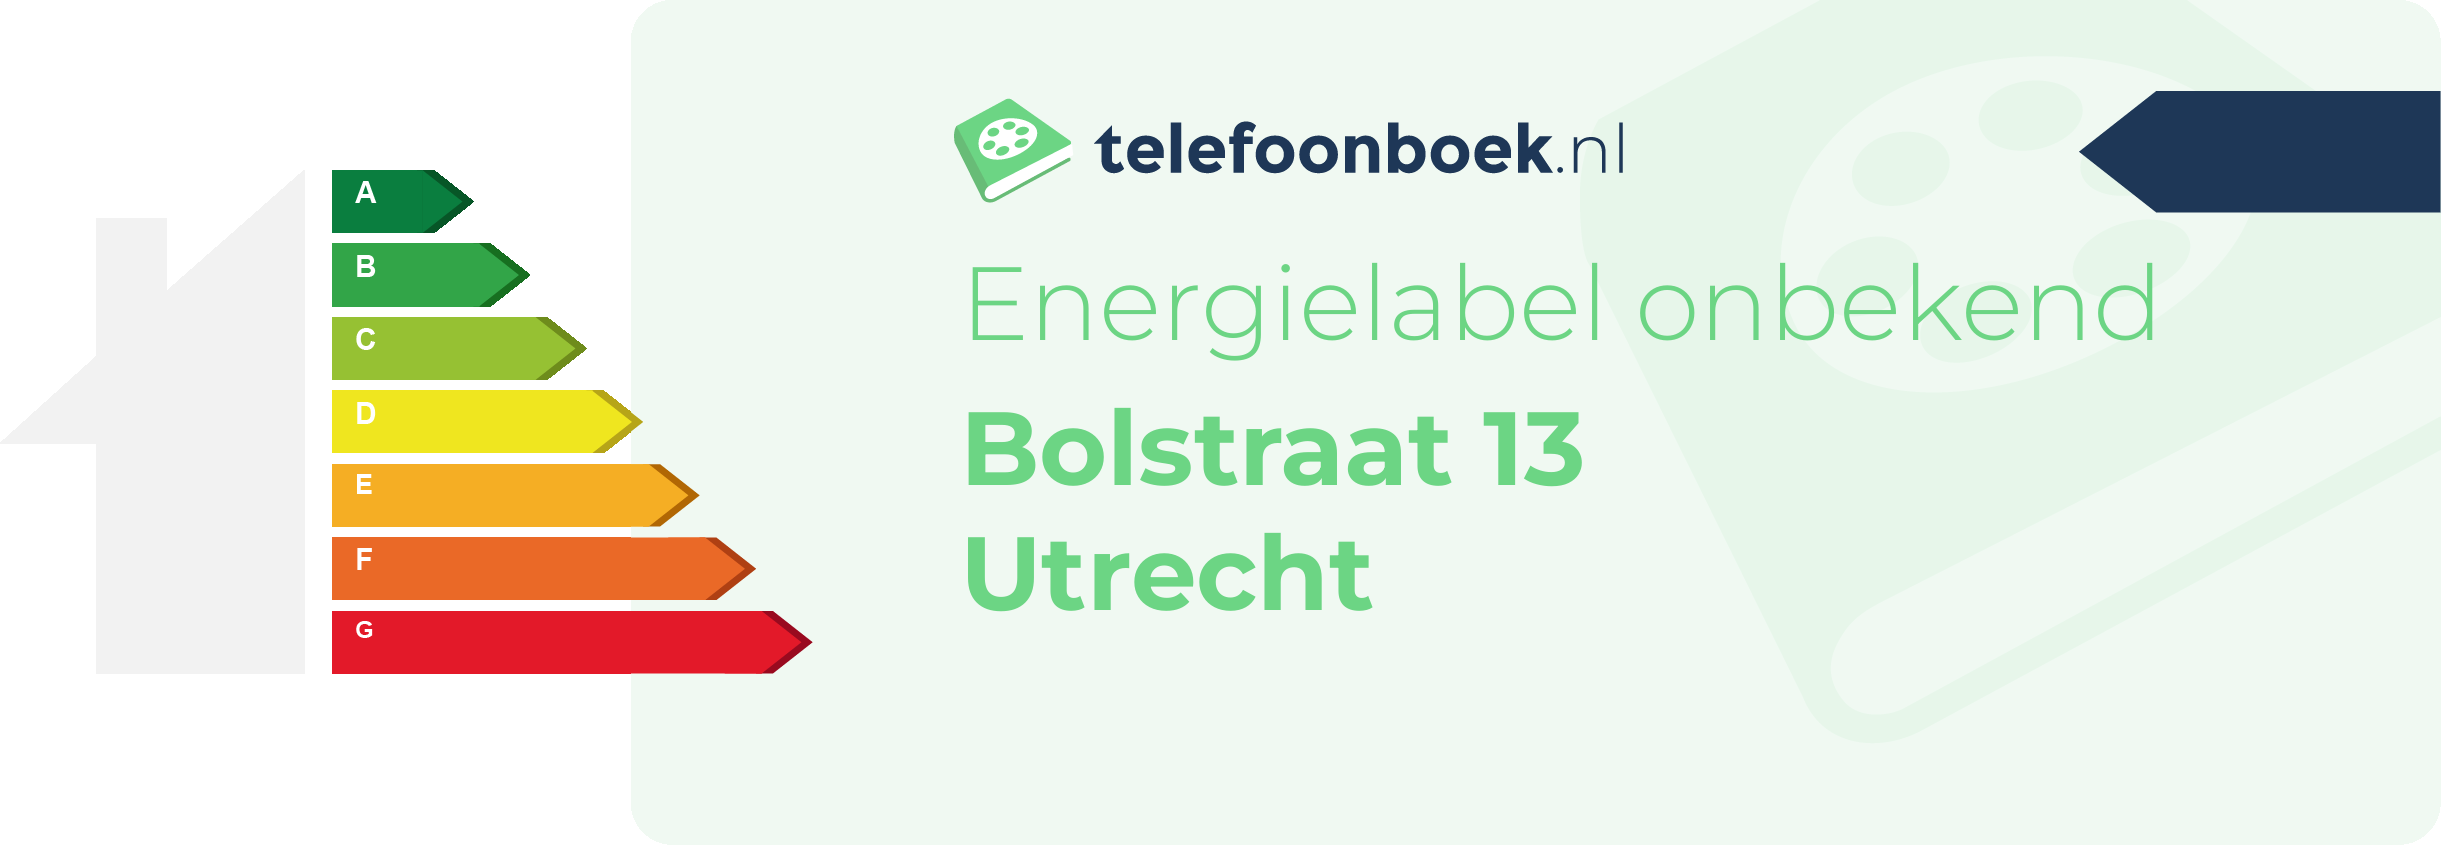 Energielabel Bolstraat 13 Utrecht